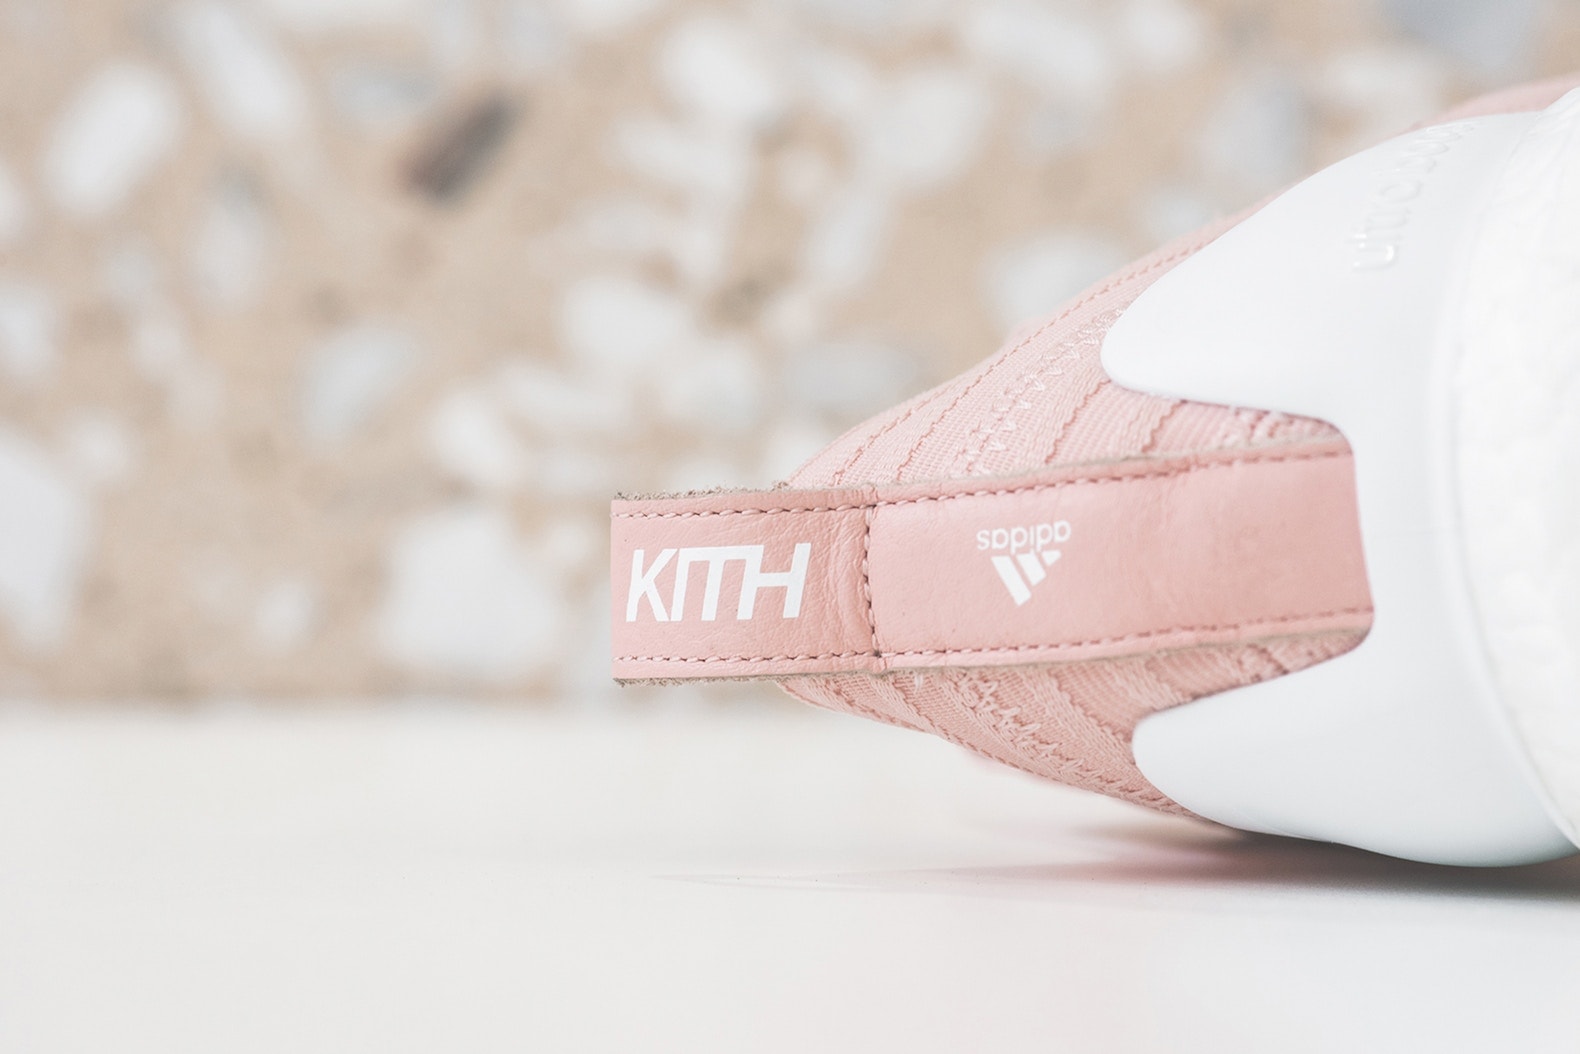 近賞 KITH Flamingos x adidas Soccer 全新聯名 Nemeziz Tango 17+ UltraBOOST 及 Nemeziz Tango 17.1 鞋款